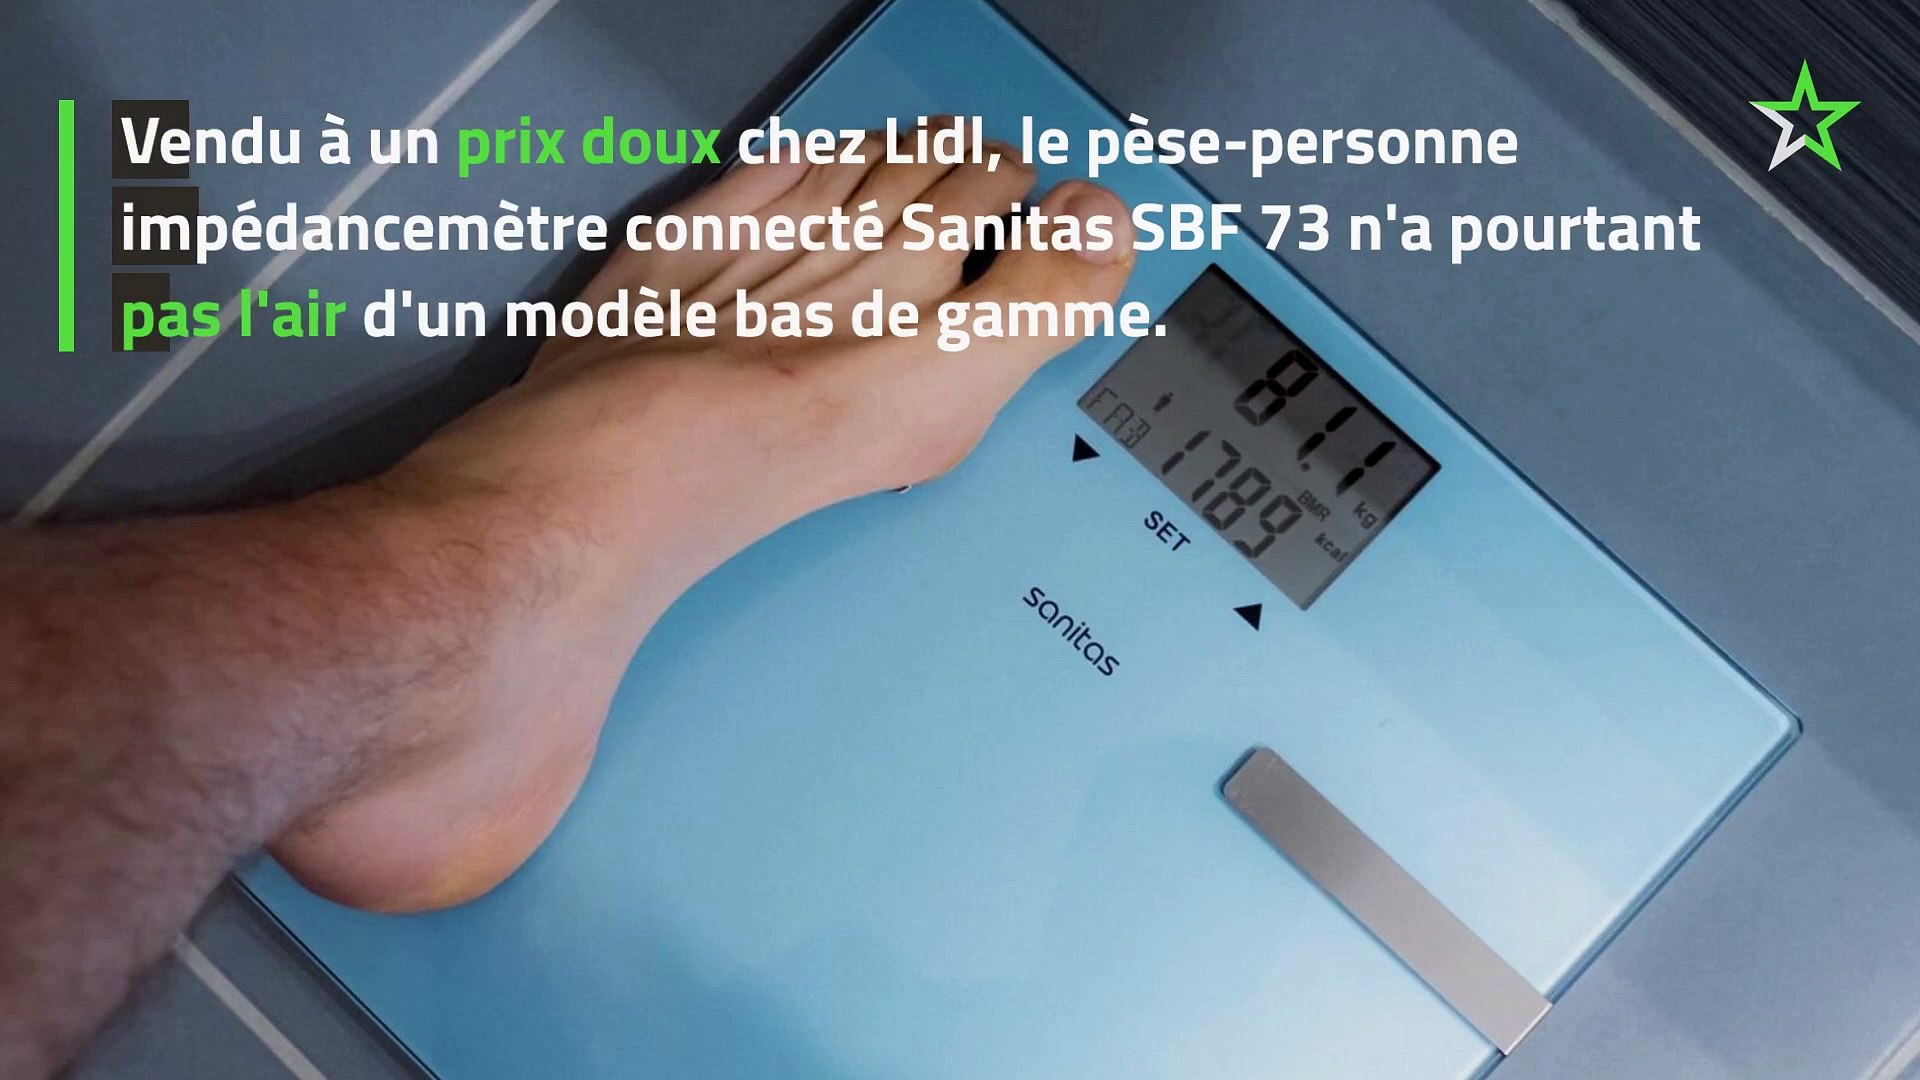 Test Sanitas SBF 73 : le pèse-personne impédancemètre à petit prix de Lidl  - Vidéo Dailymotion